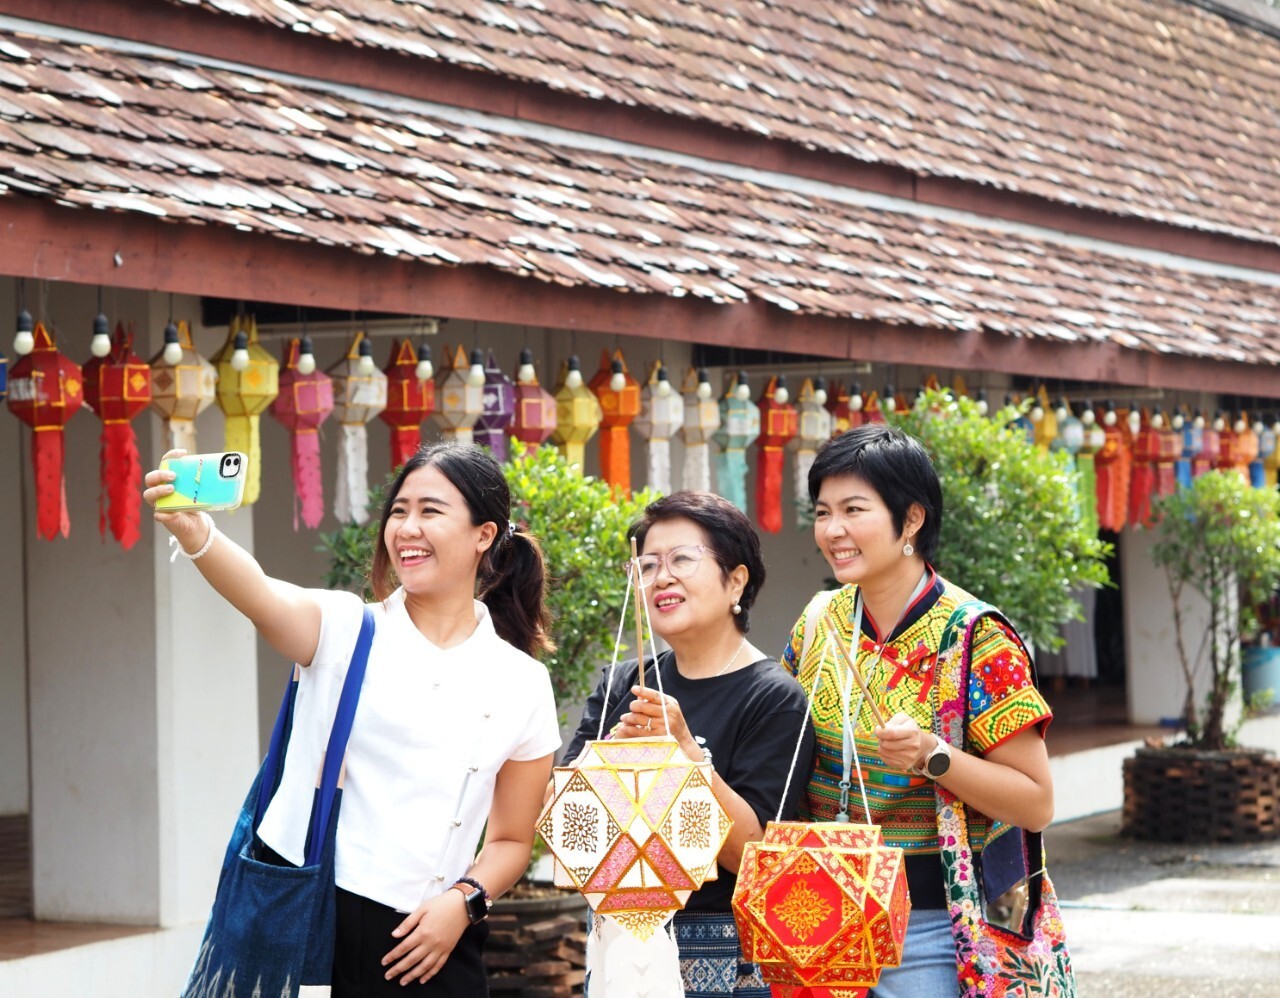 ครั้งแรก !! เปิดตัว แบรนด์การท่องเที่ยวเชิงสร้างสรรค์  CT Thailand by DASTA หวังชูการท่องเที่ยวเชิงสร้างสรรค์ของไทยสร้างรายได้และความสุขสู่ชุมชน